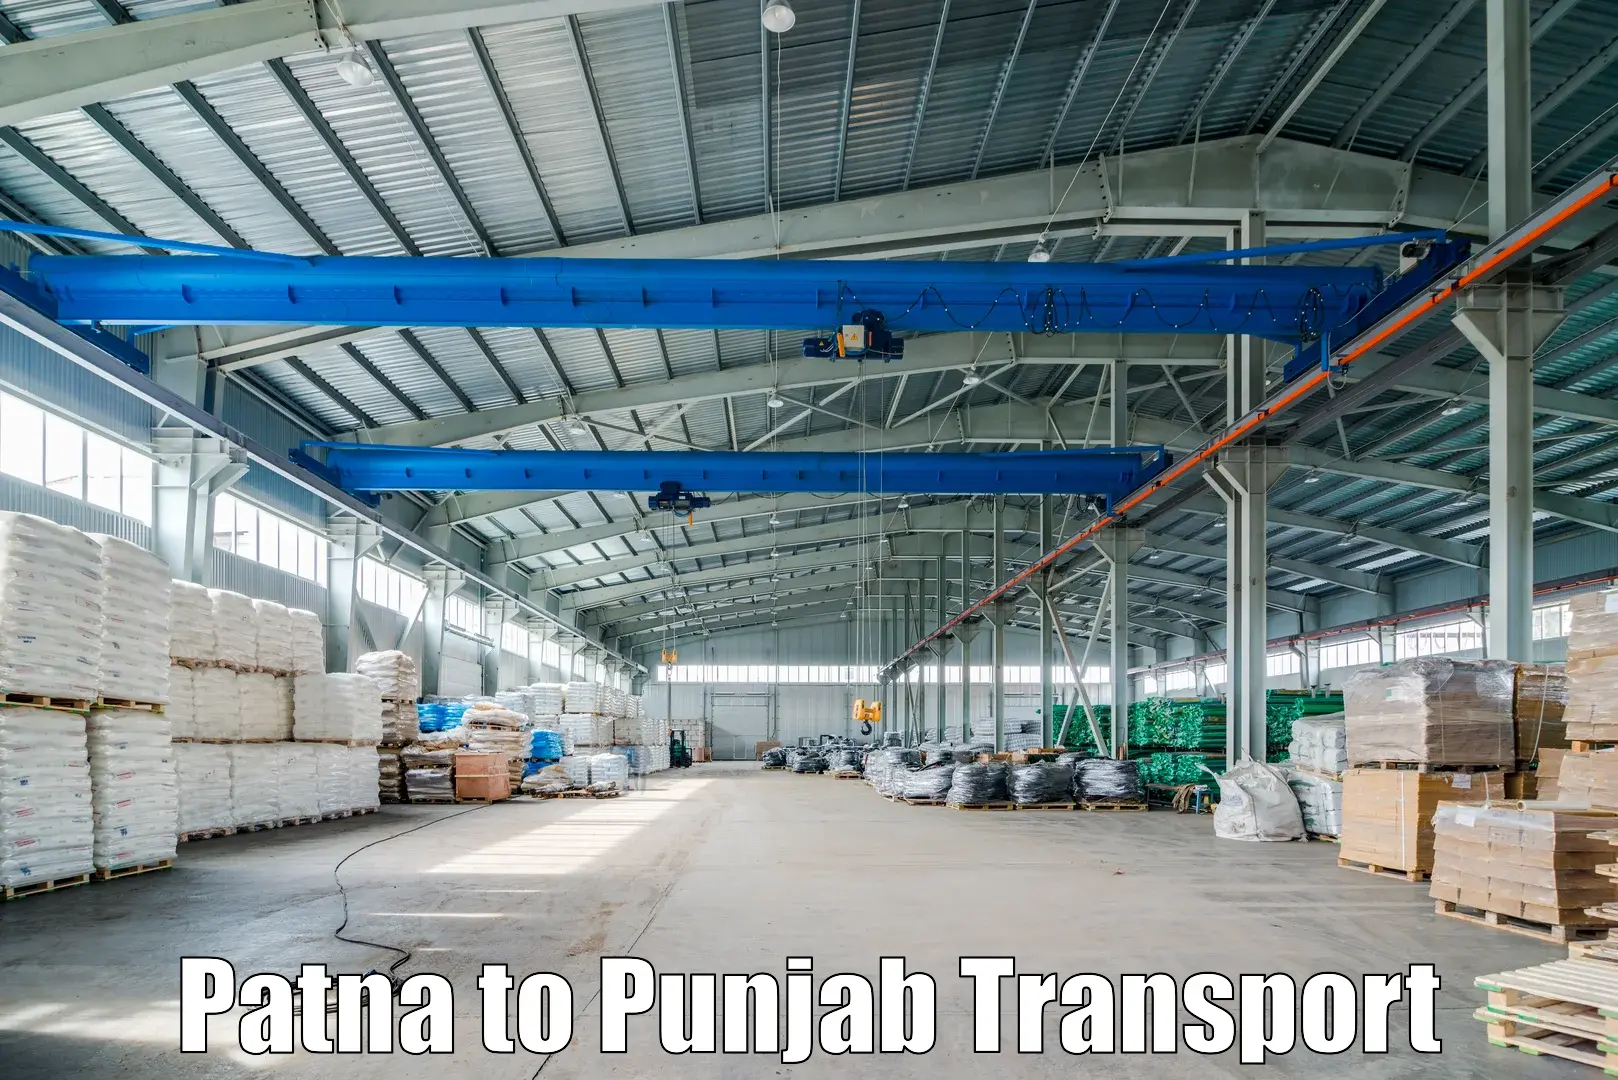 Nearby transport service Patna to Punjab